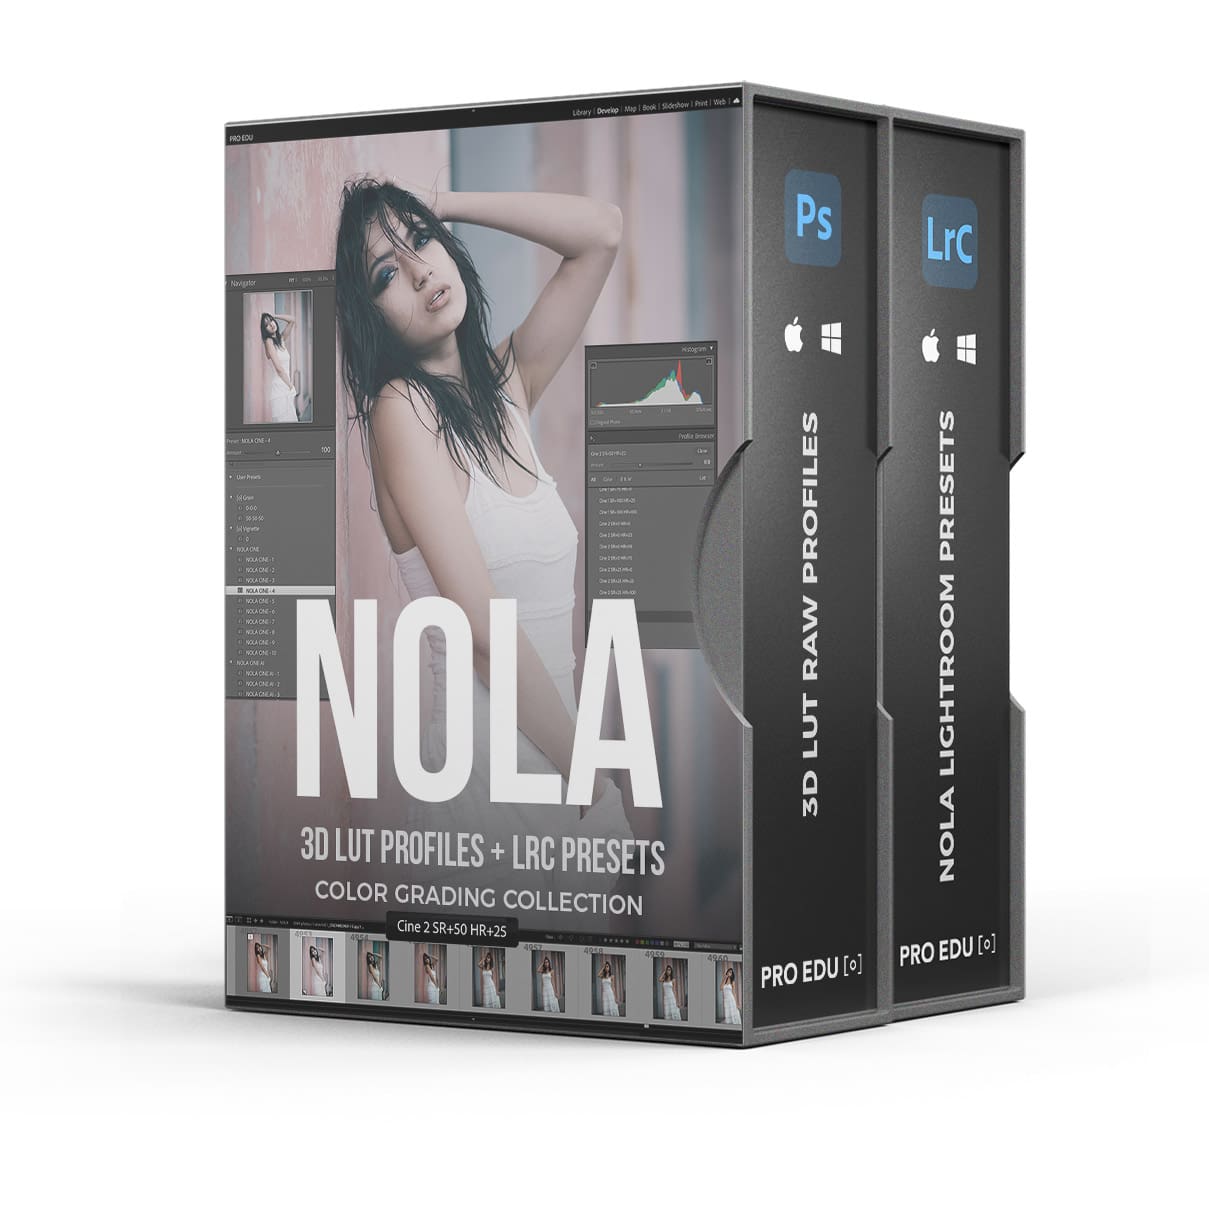 3D LUT Profiles & Color Grading Presets: NOLA Natural Light